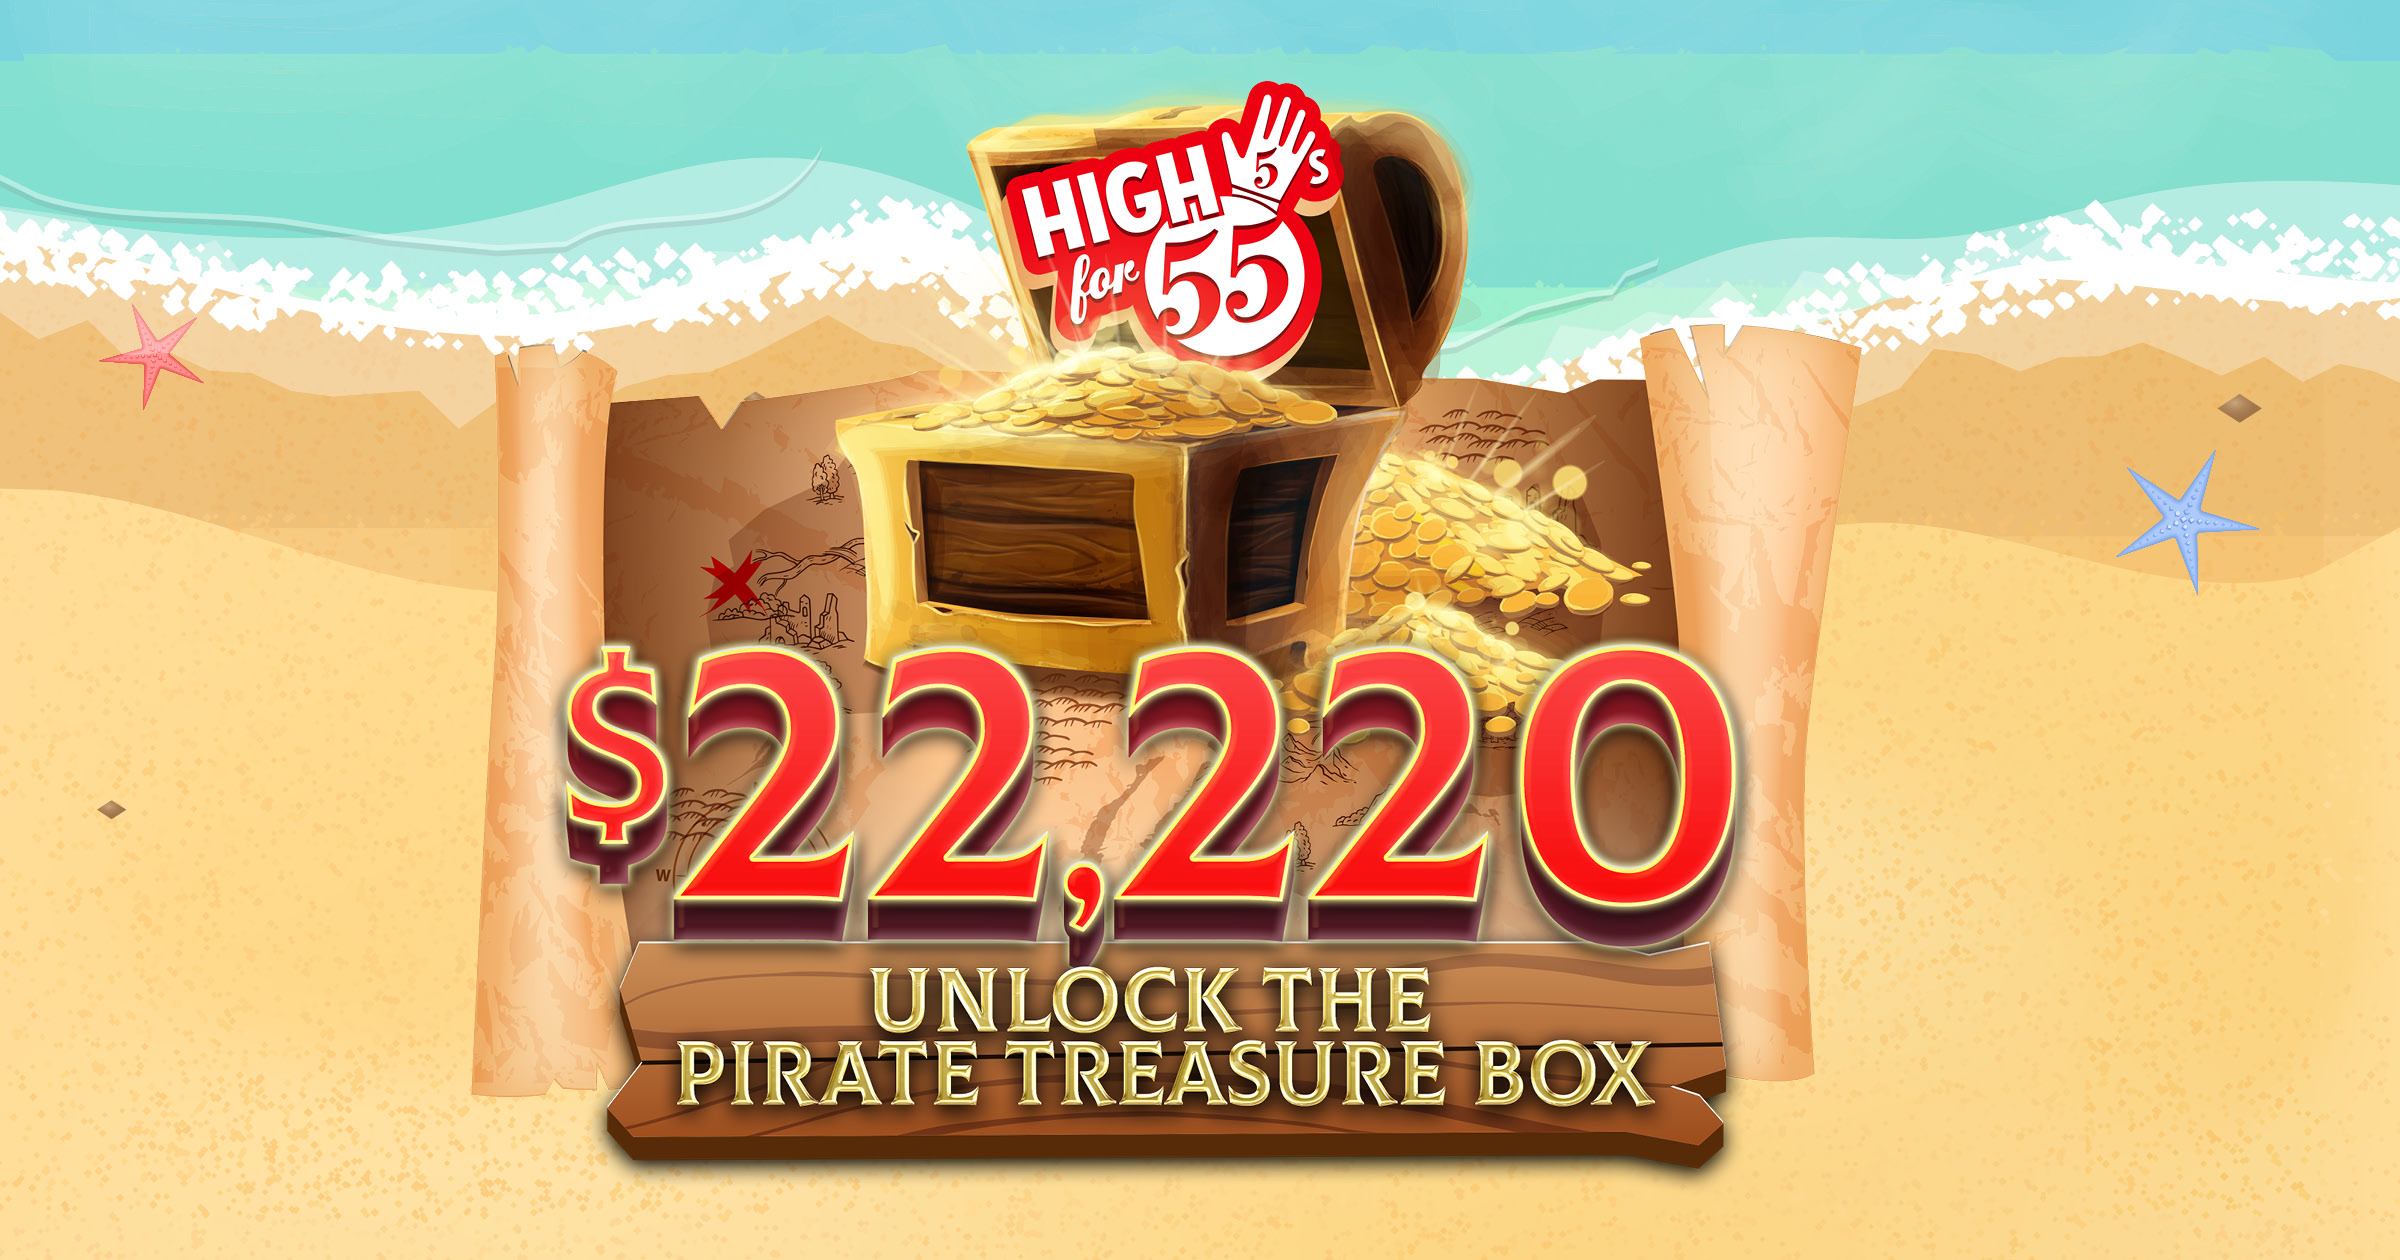 High 5s for 55 – $22,220 Unlock the Pirate Treasure Box